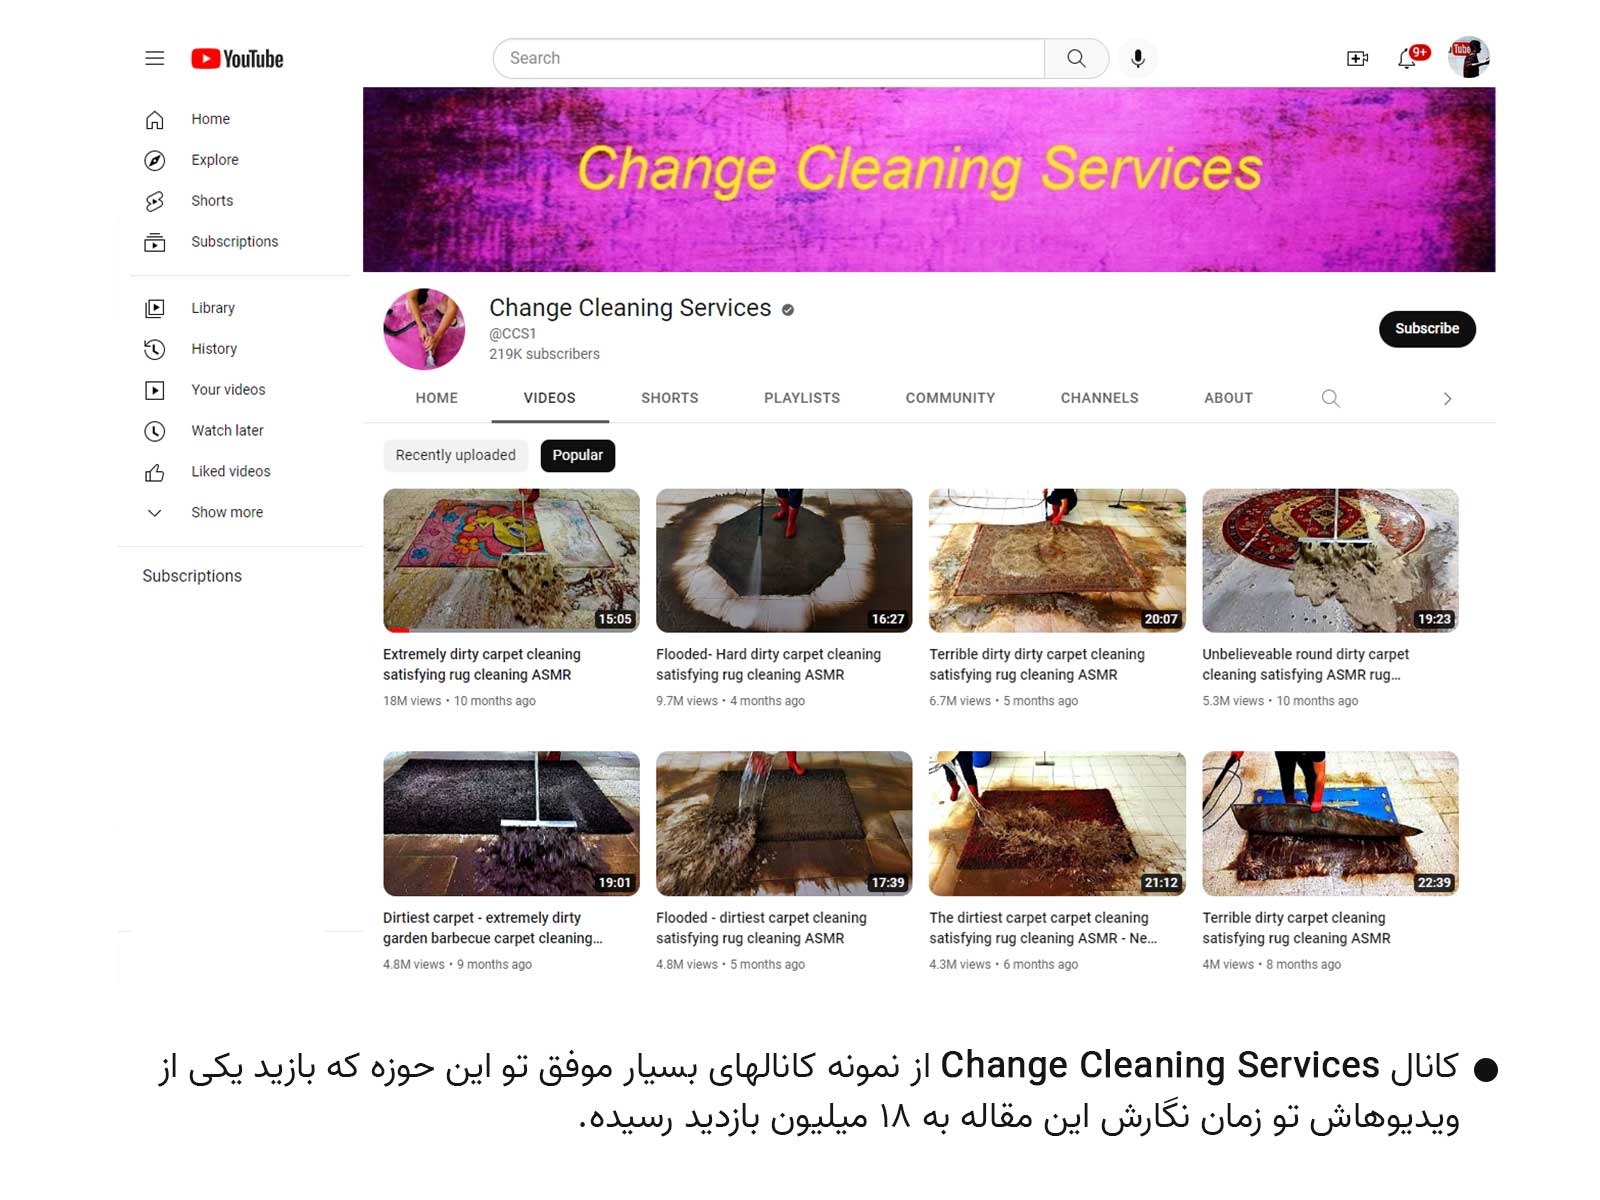 ایده شستن فرش برای کسب درآمد از یوتیوب - رامون طالع